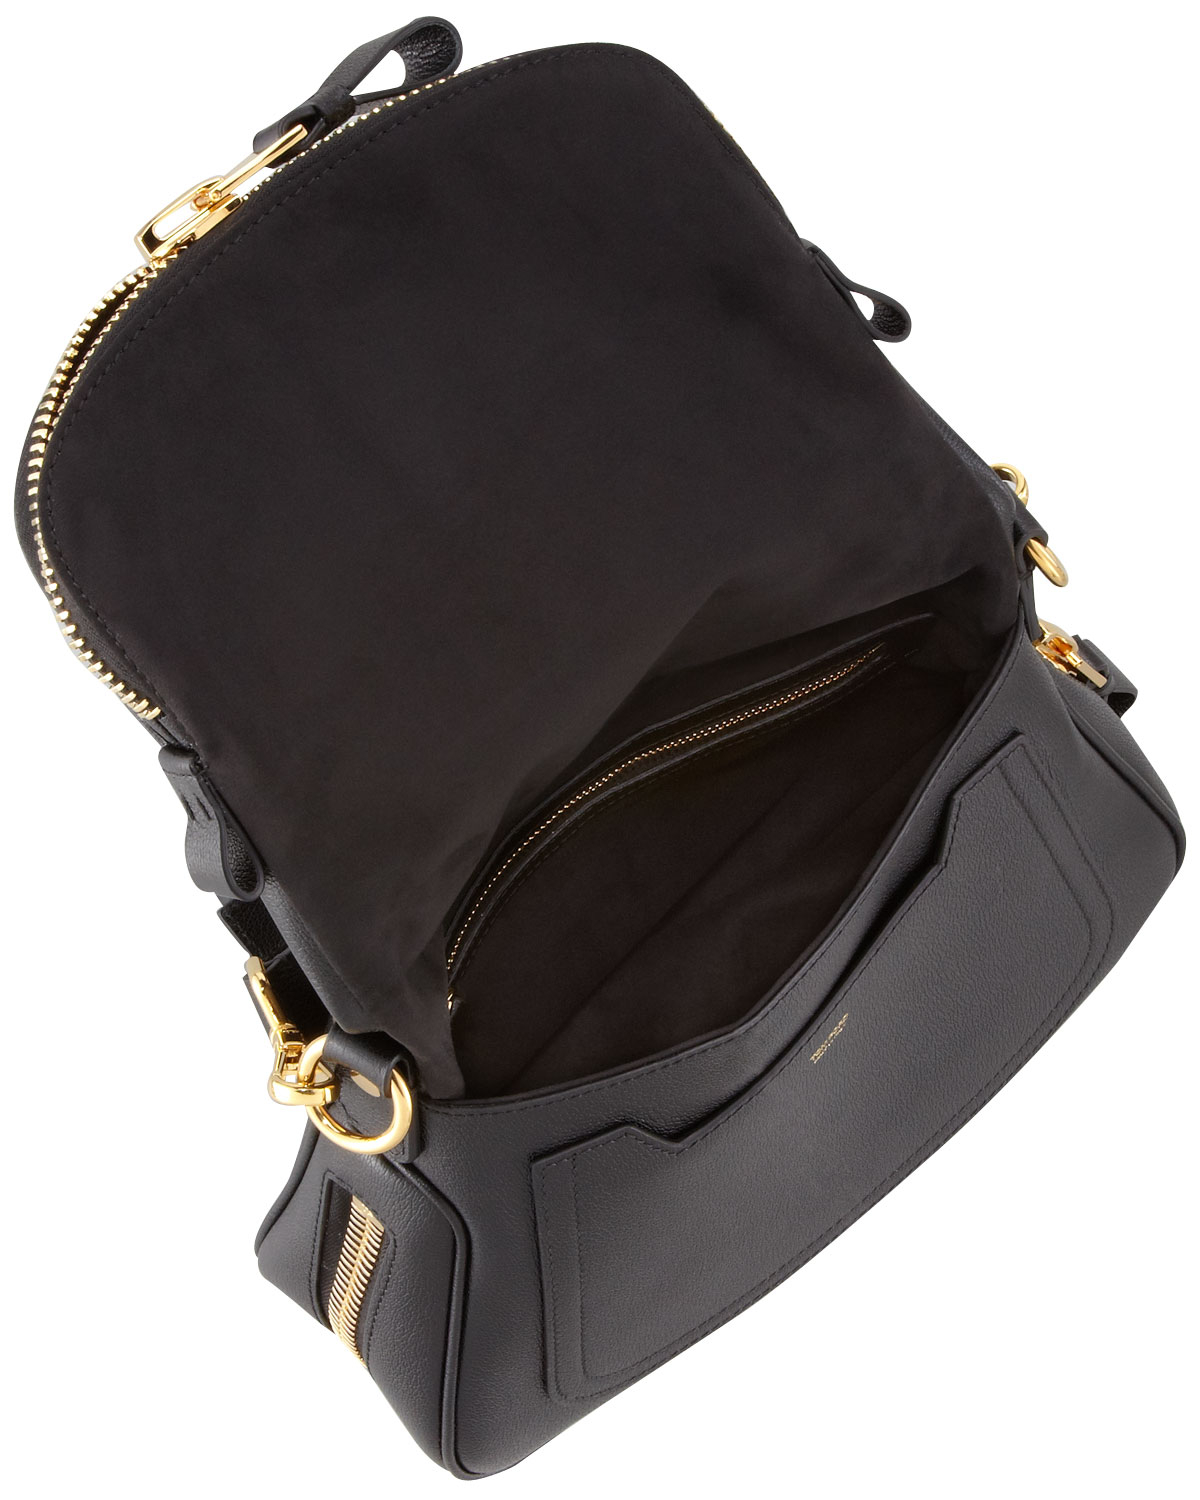 Tom ford Jennifer Medium Leather Shoulder Bag in Black | Lyst